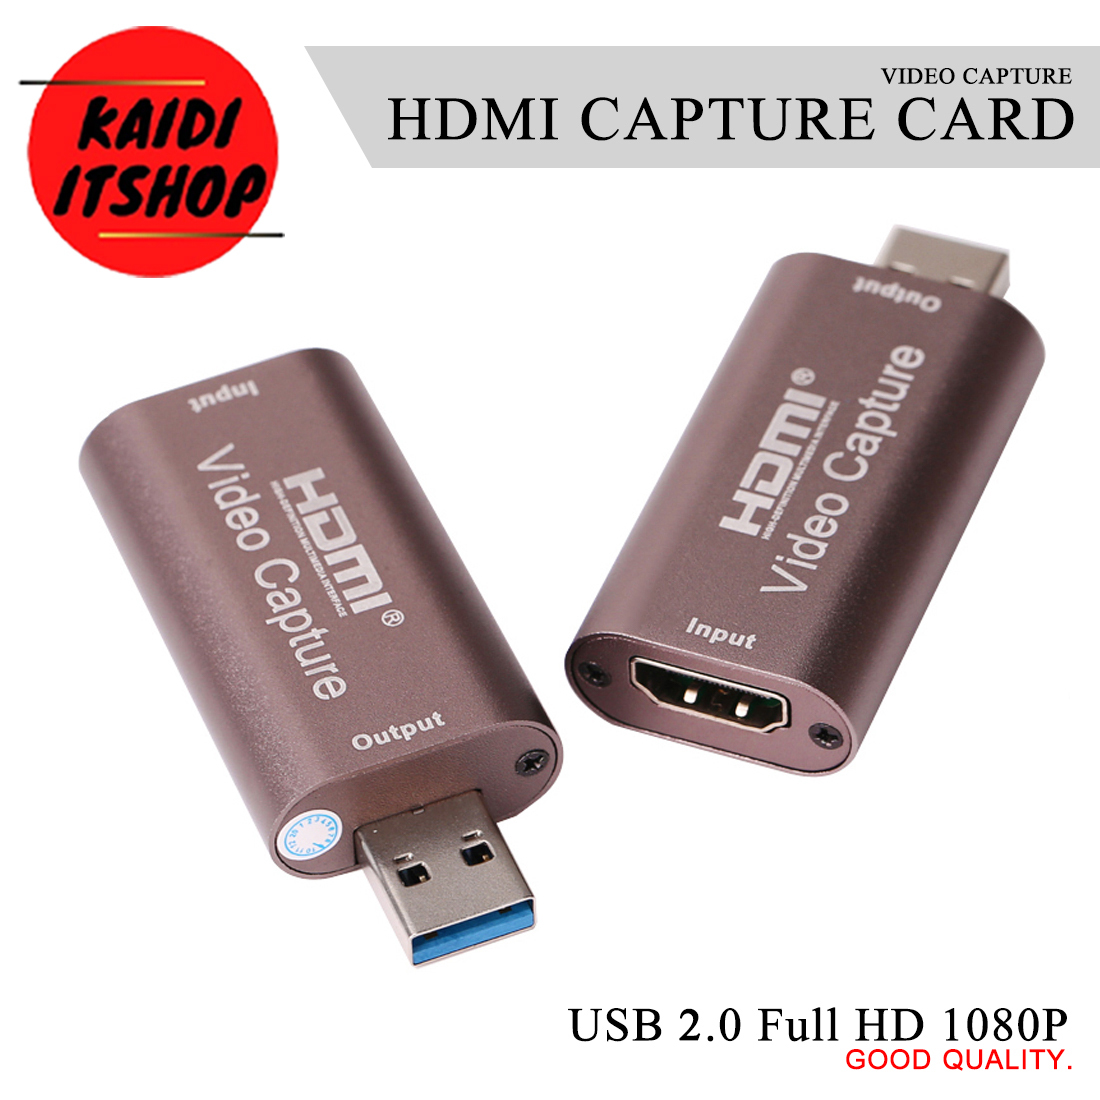 ภาพอธิบายเพิ่มเติมของ HDM i Video Capture Card USB 2.0 แคปเจอร์การ์ด รองรับภาพ Full HD 1080P (Color: Rose Gold)